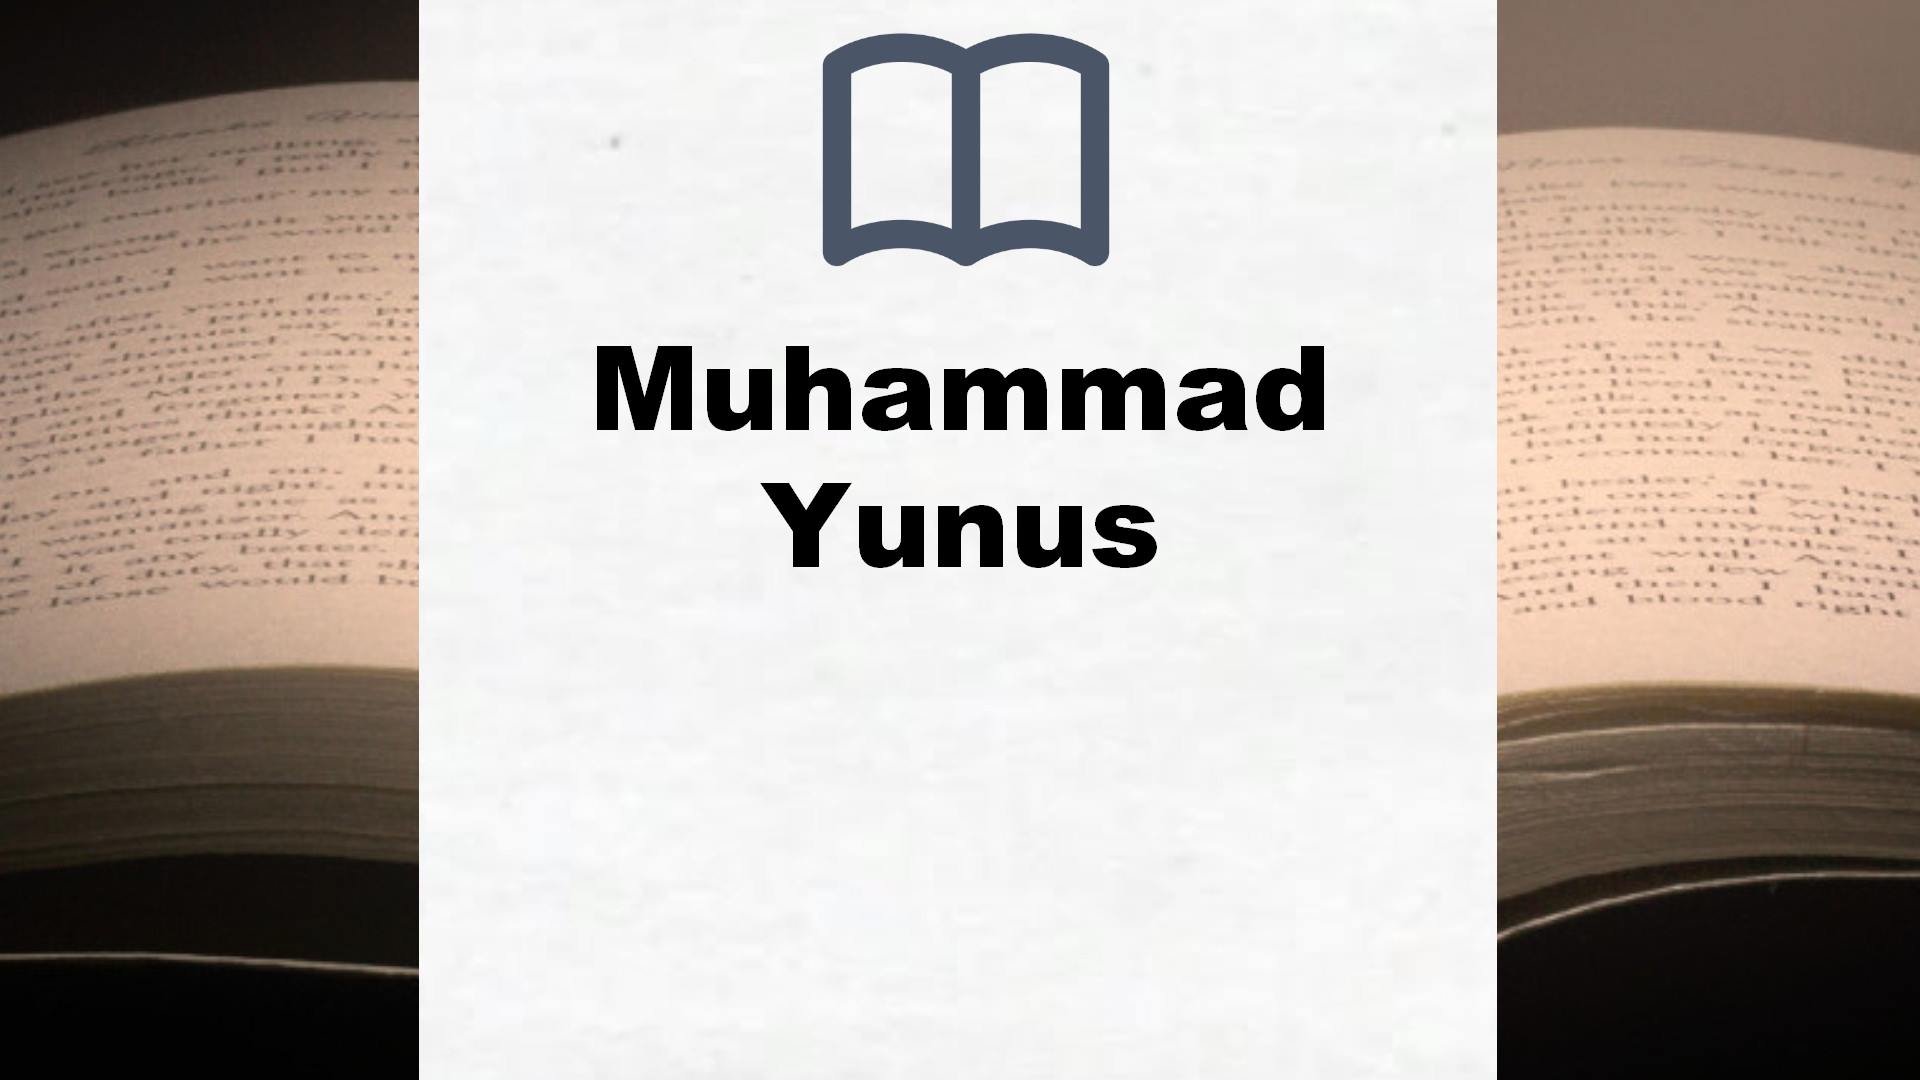 Libros Muhammad Yunus